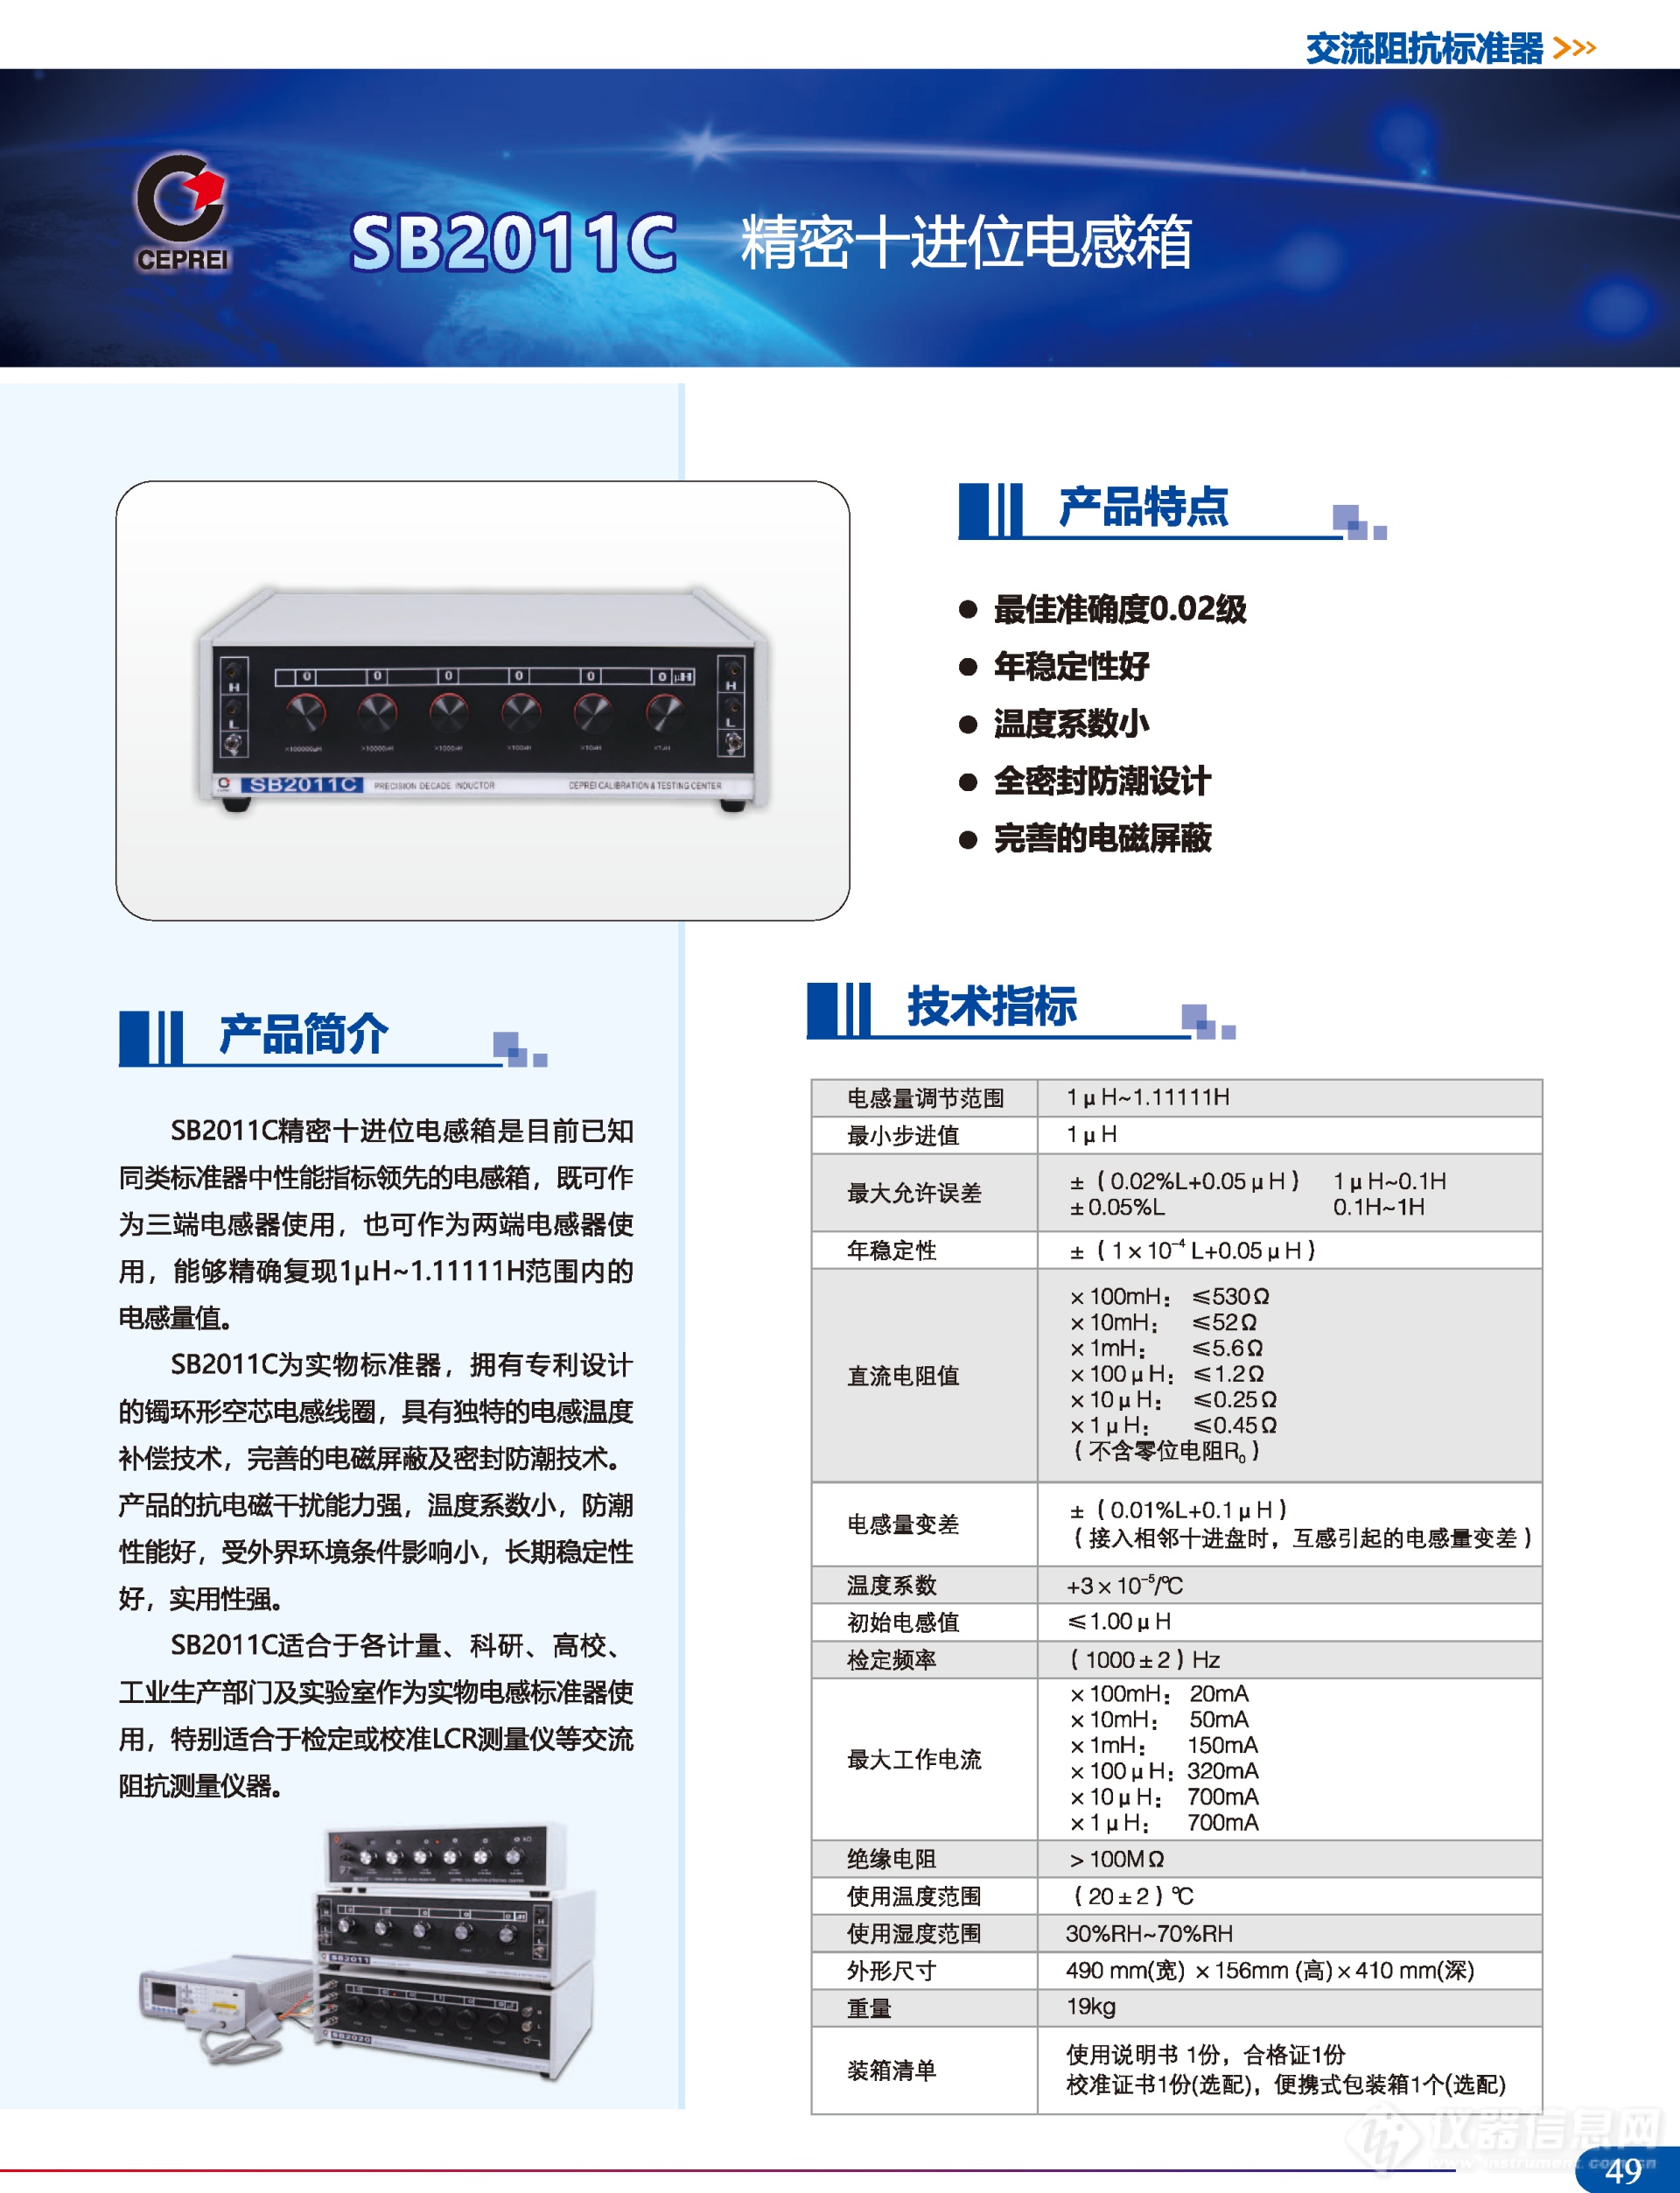 广州赛宝计量仪器产品彩页-202105版_页面_53.png